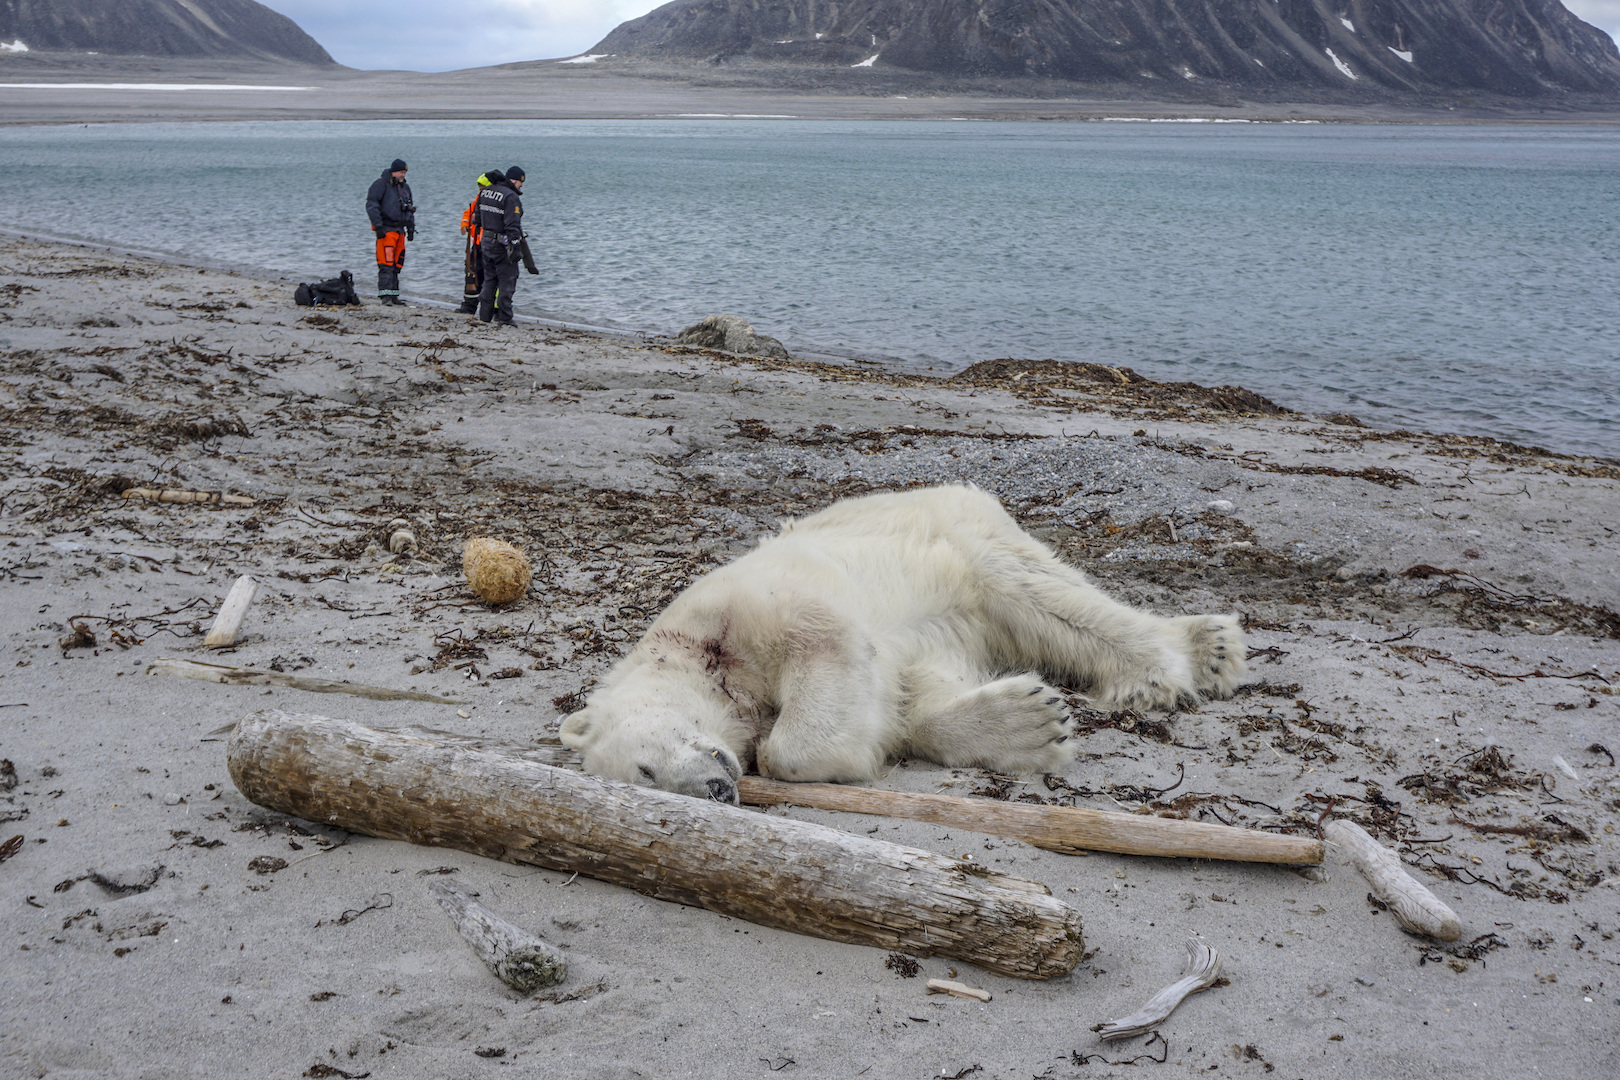 Matan a tiros a oso polar que atacó a guía turístico